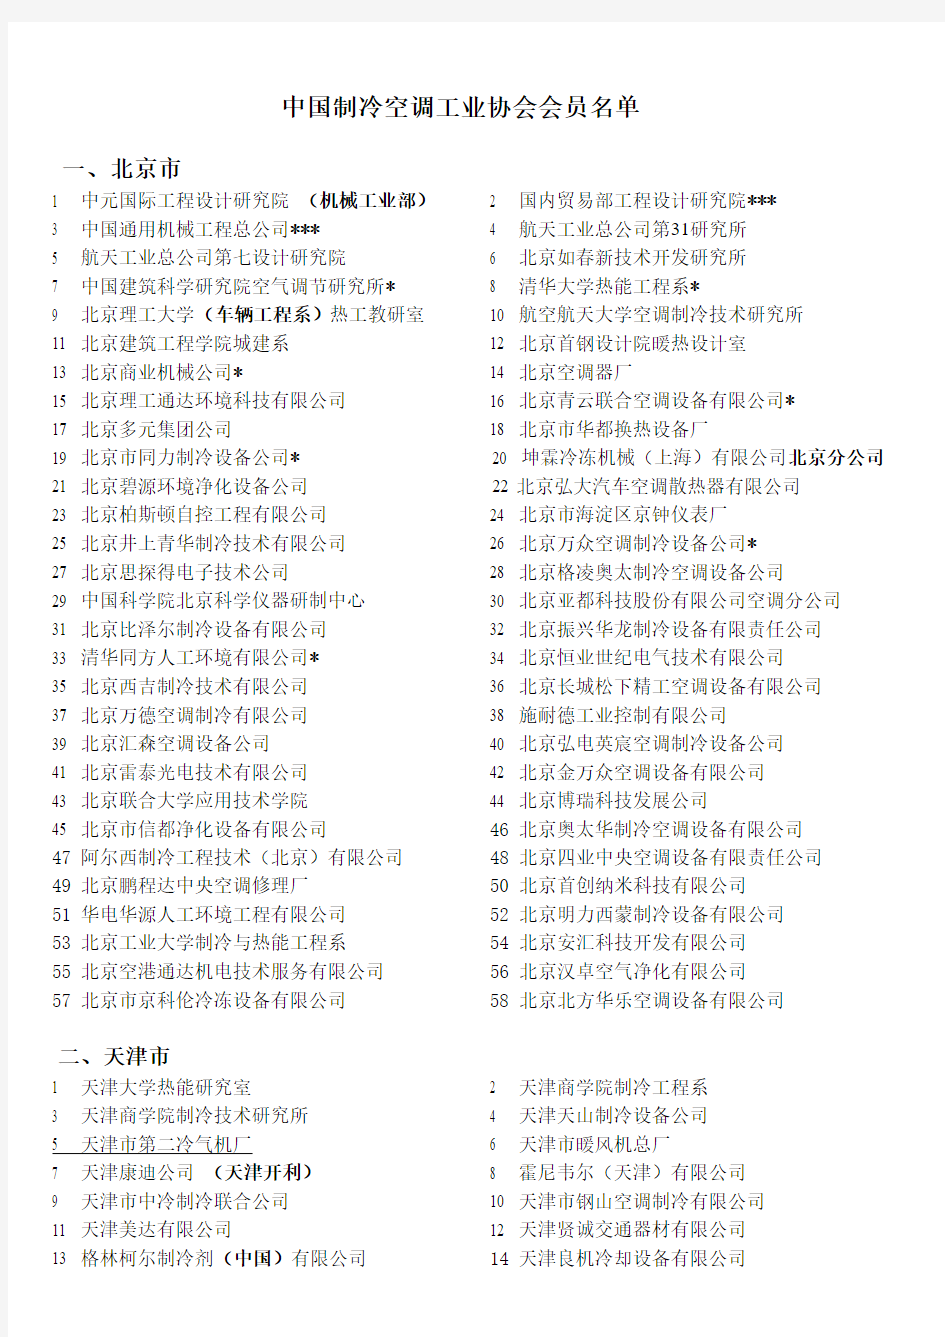 中国制冷协会名单分析